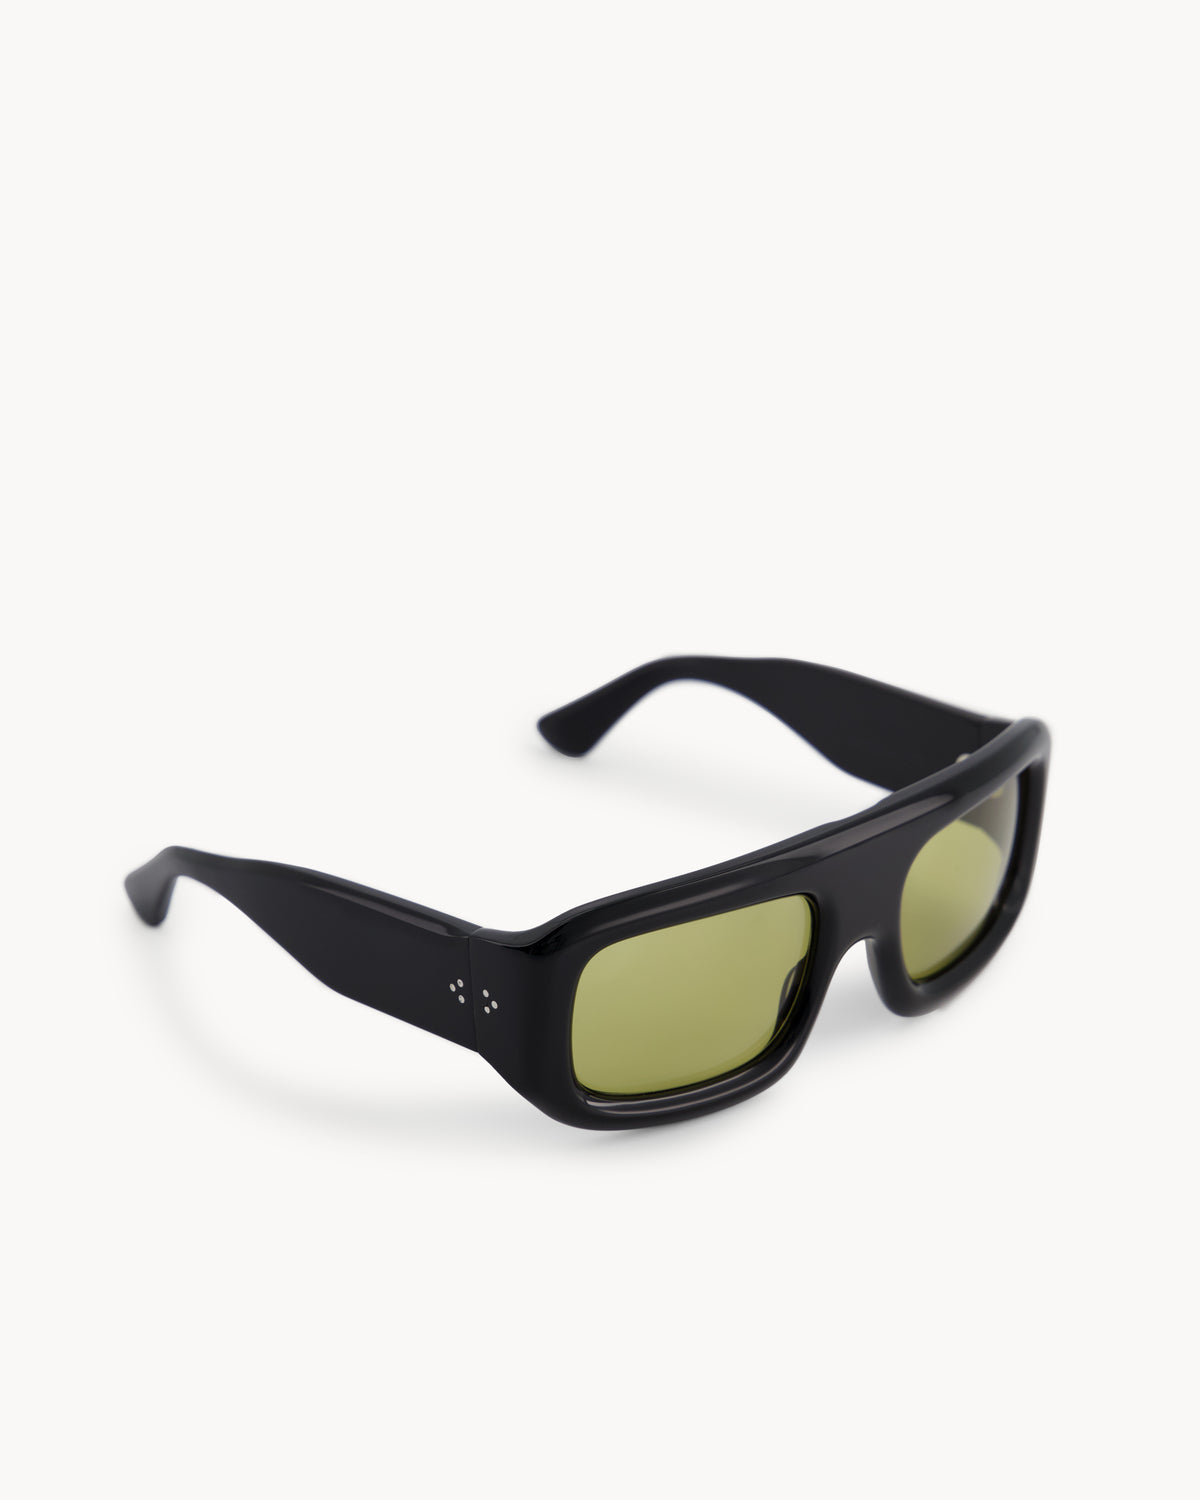 Port Tanger Mauretania Sunglasses in Black Acetate and Warm Olive Lenses 2